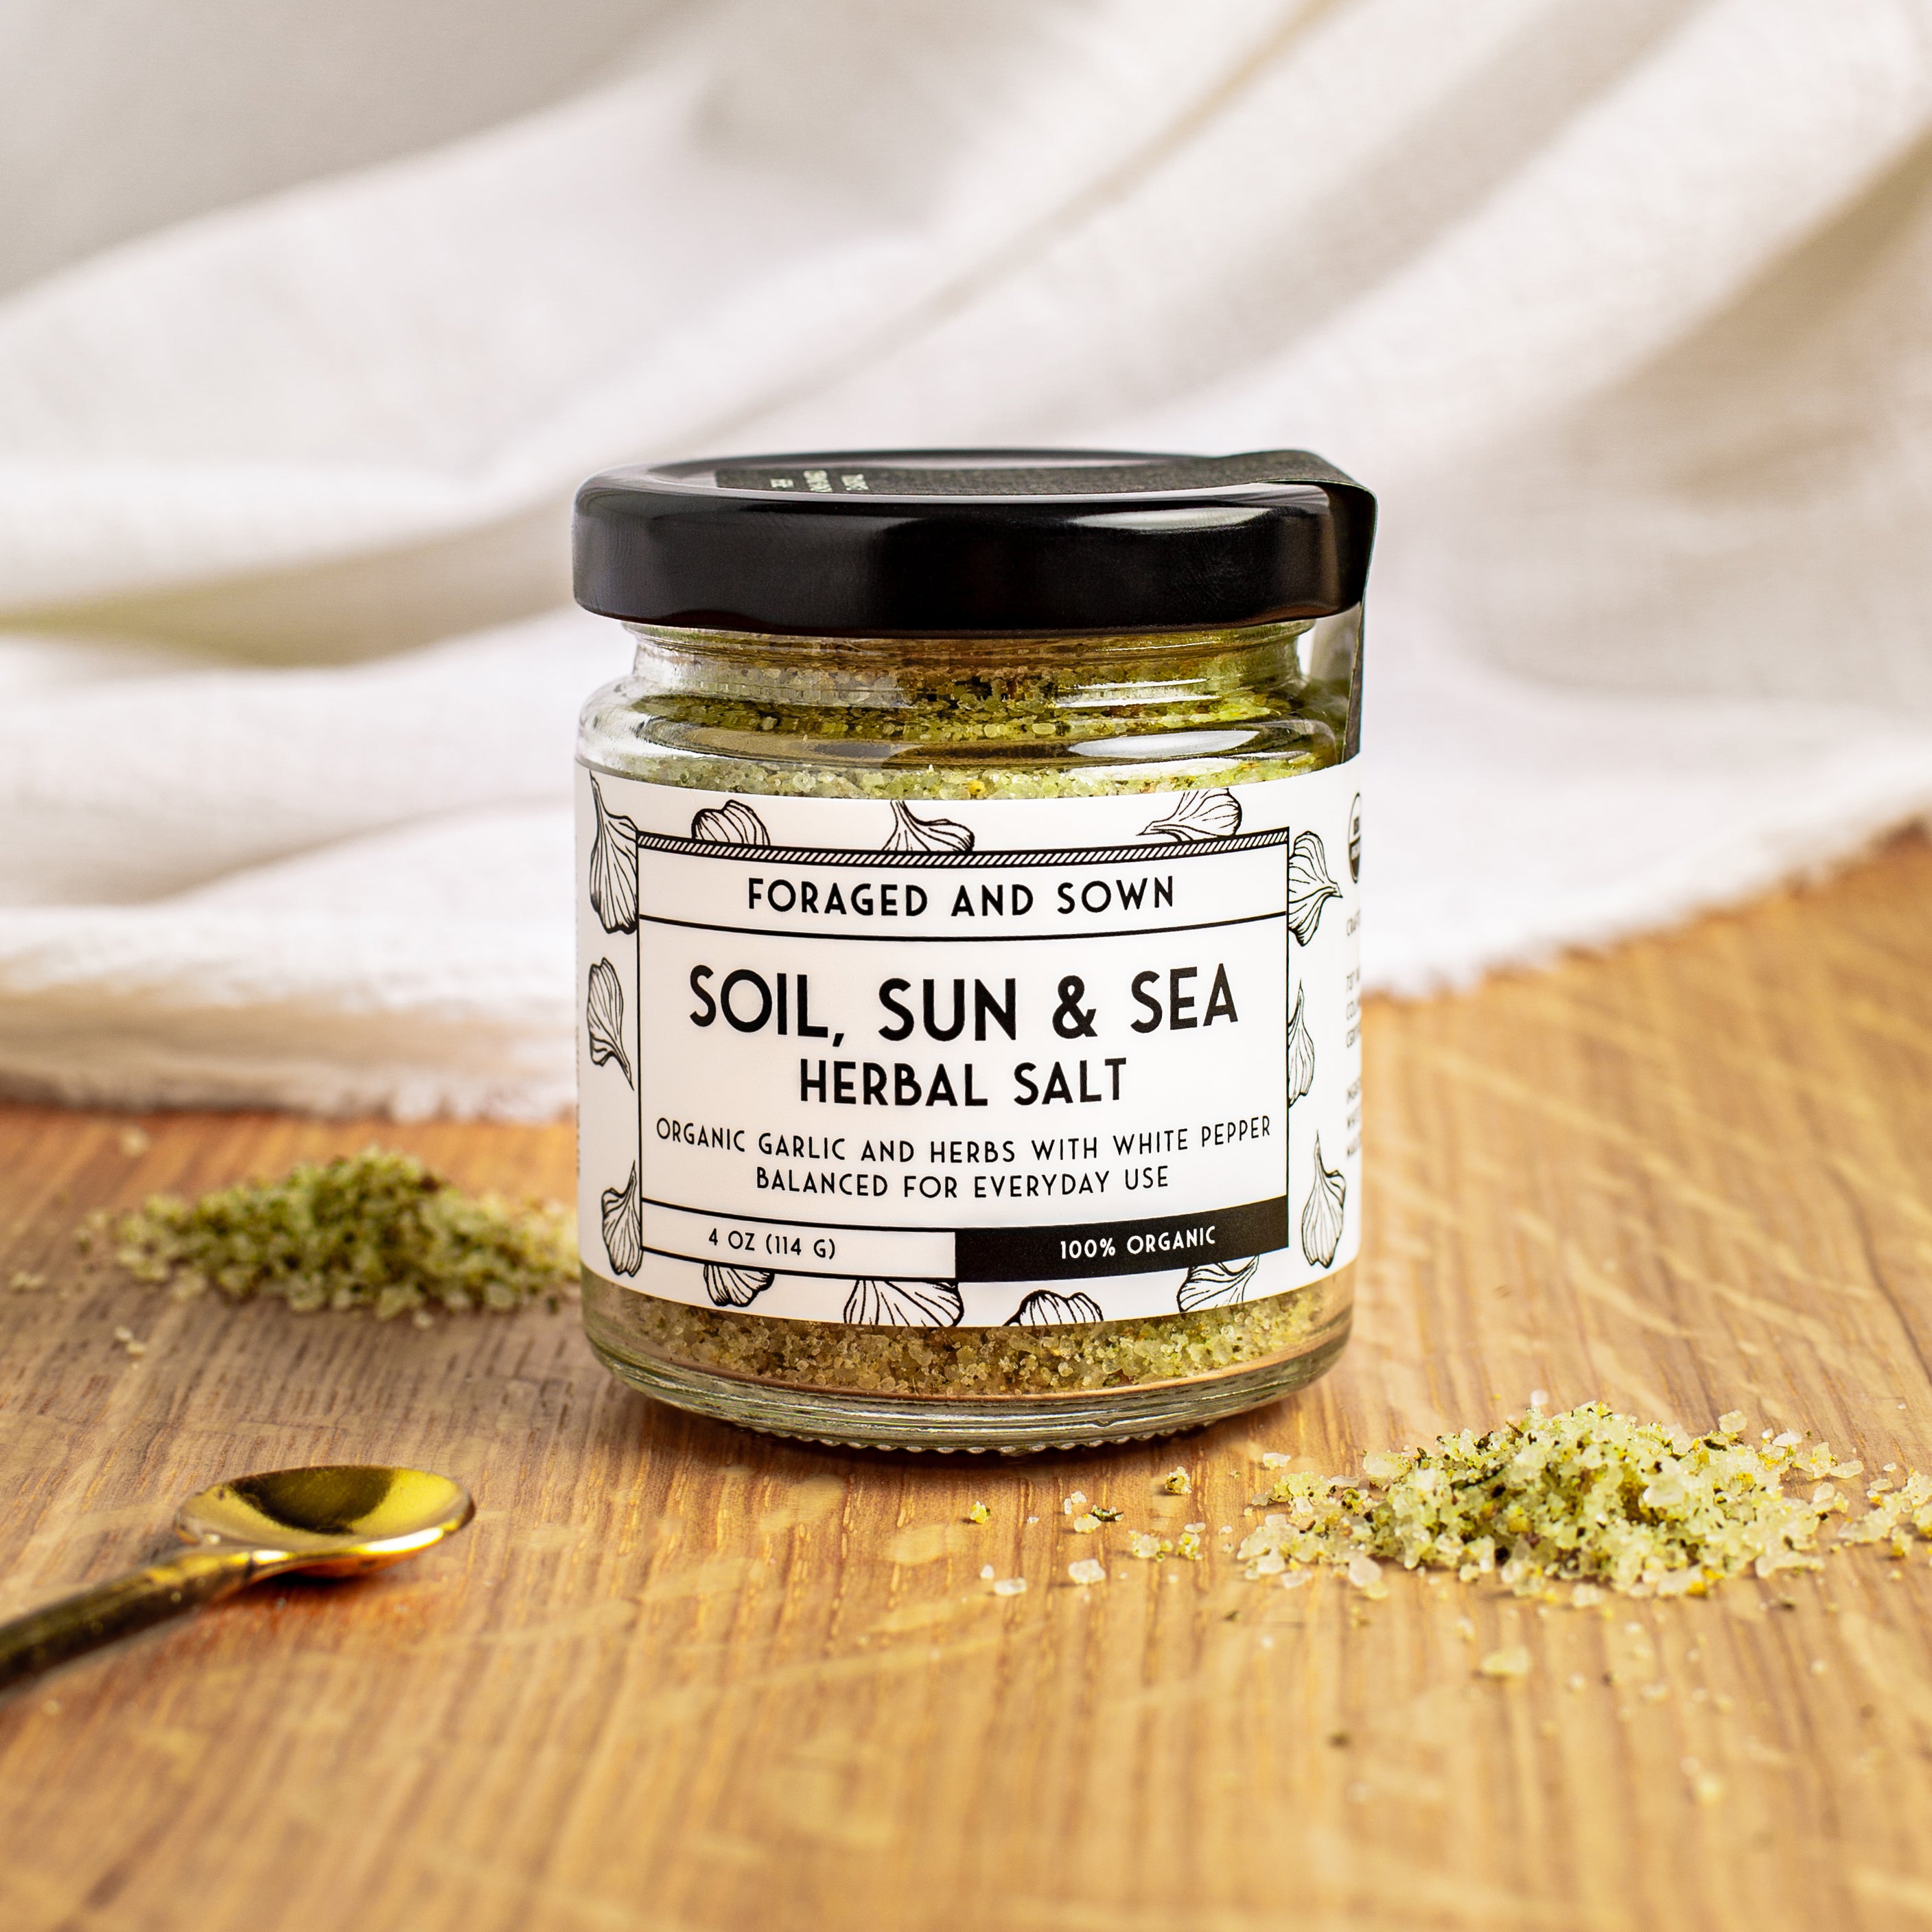 Soil, Sun & Sea Herbal Salt